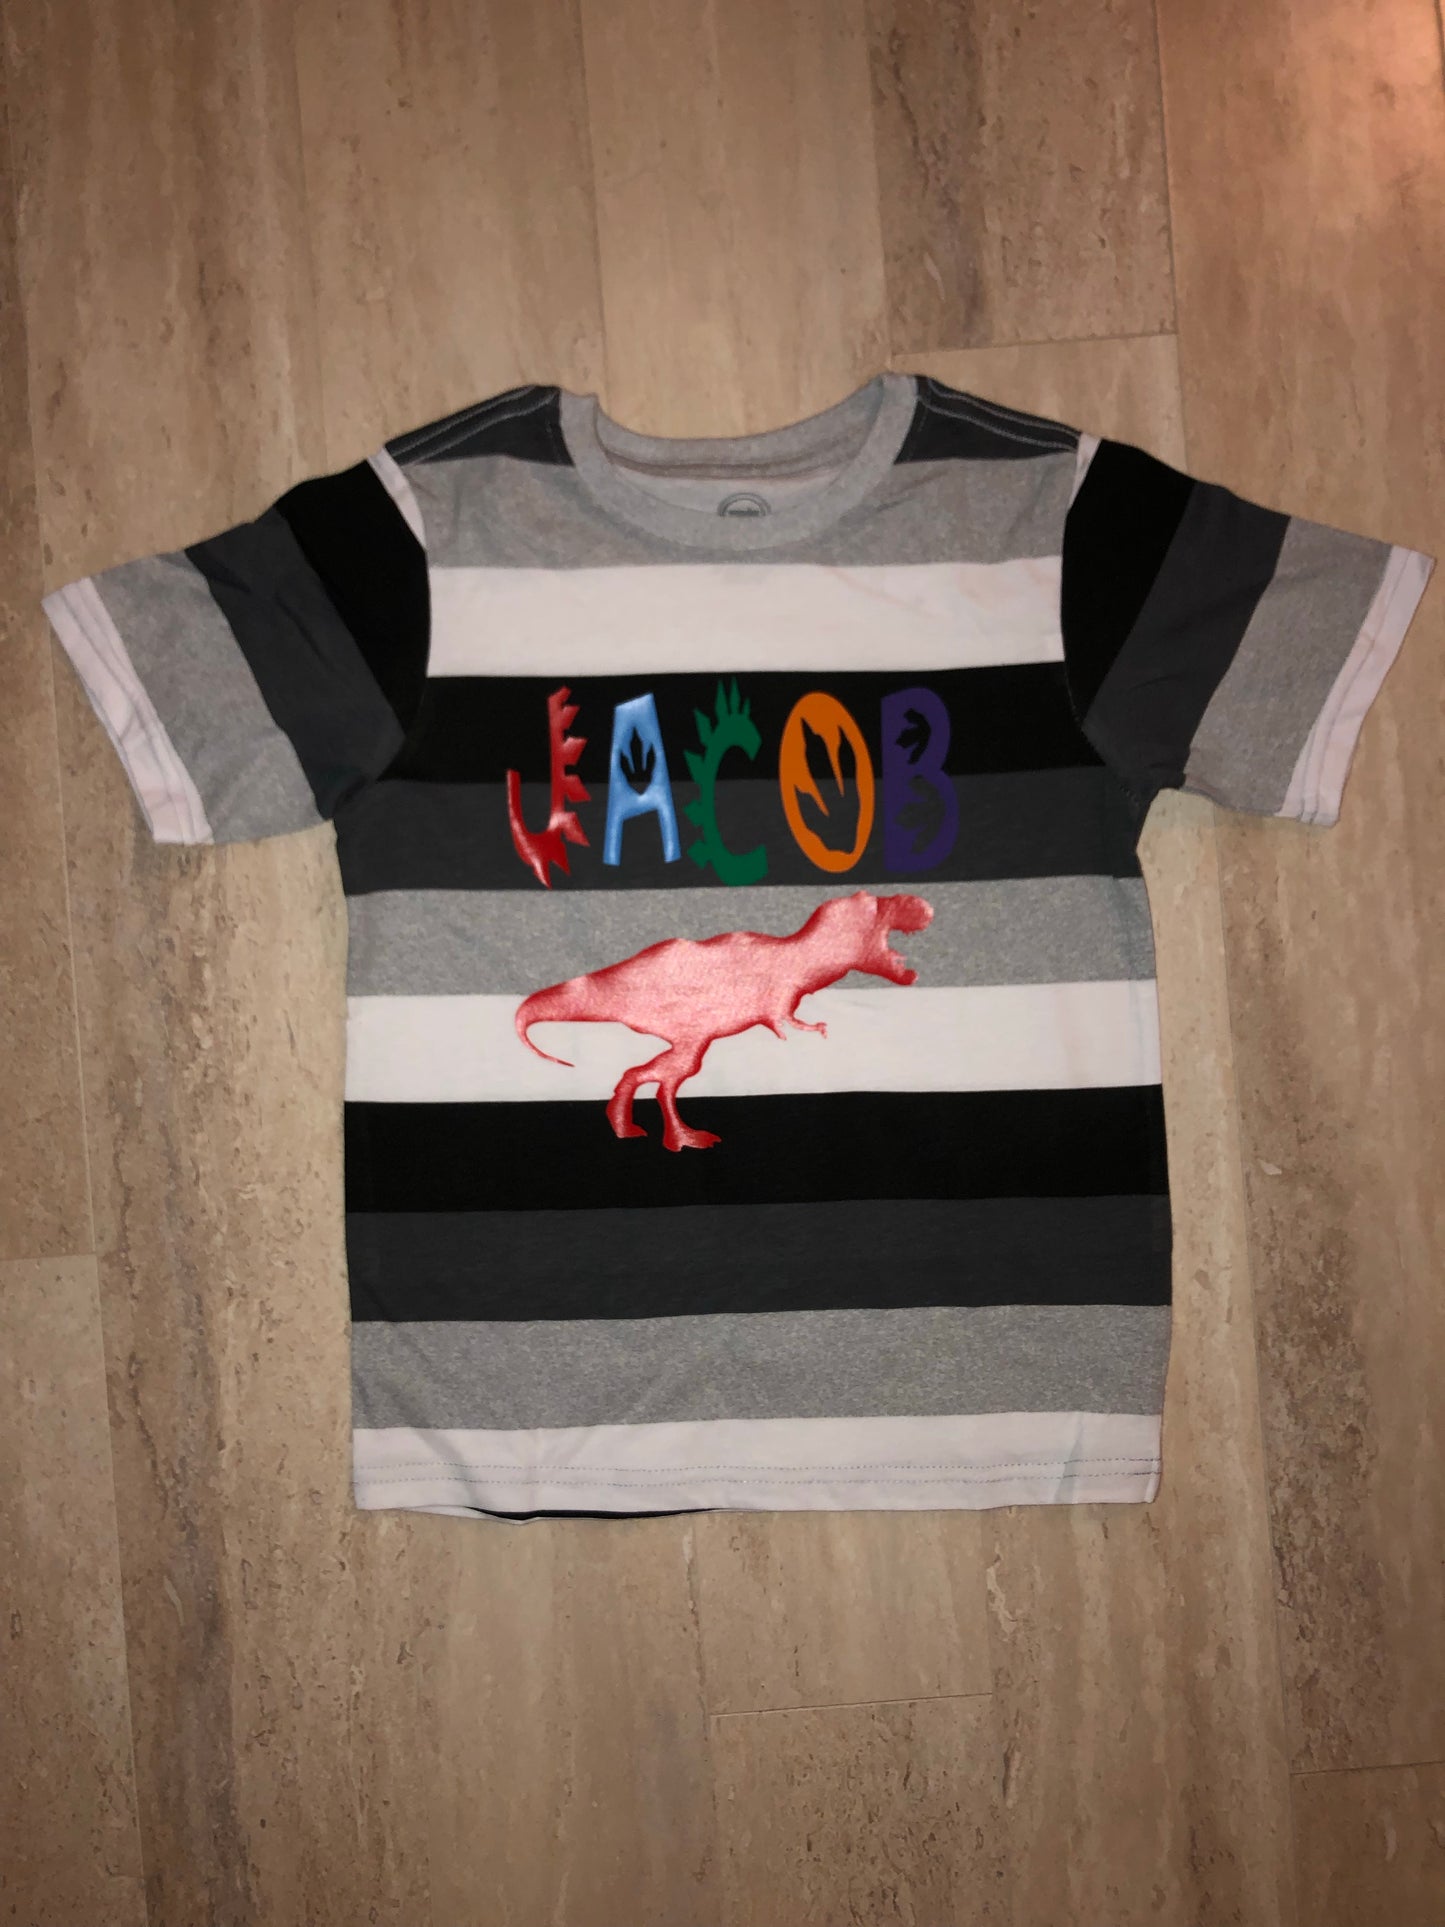 Custom child’s dinosaur t-shirt